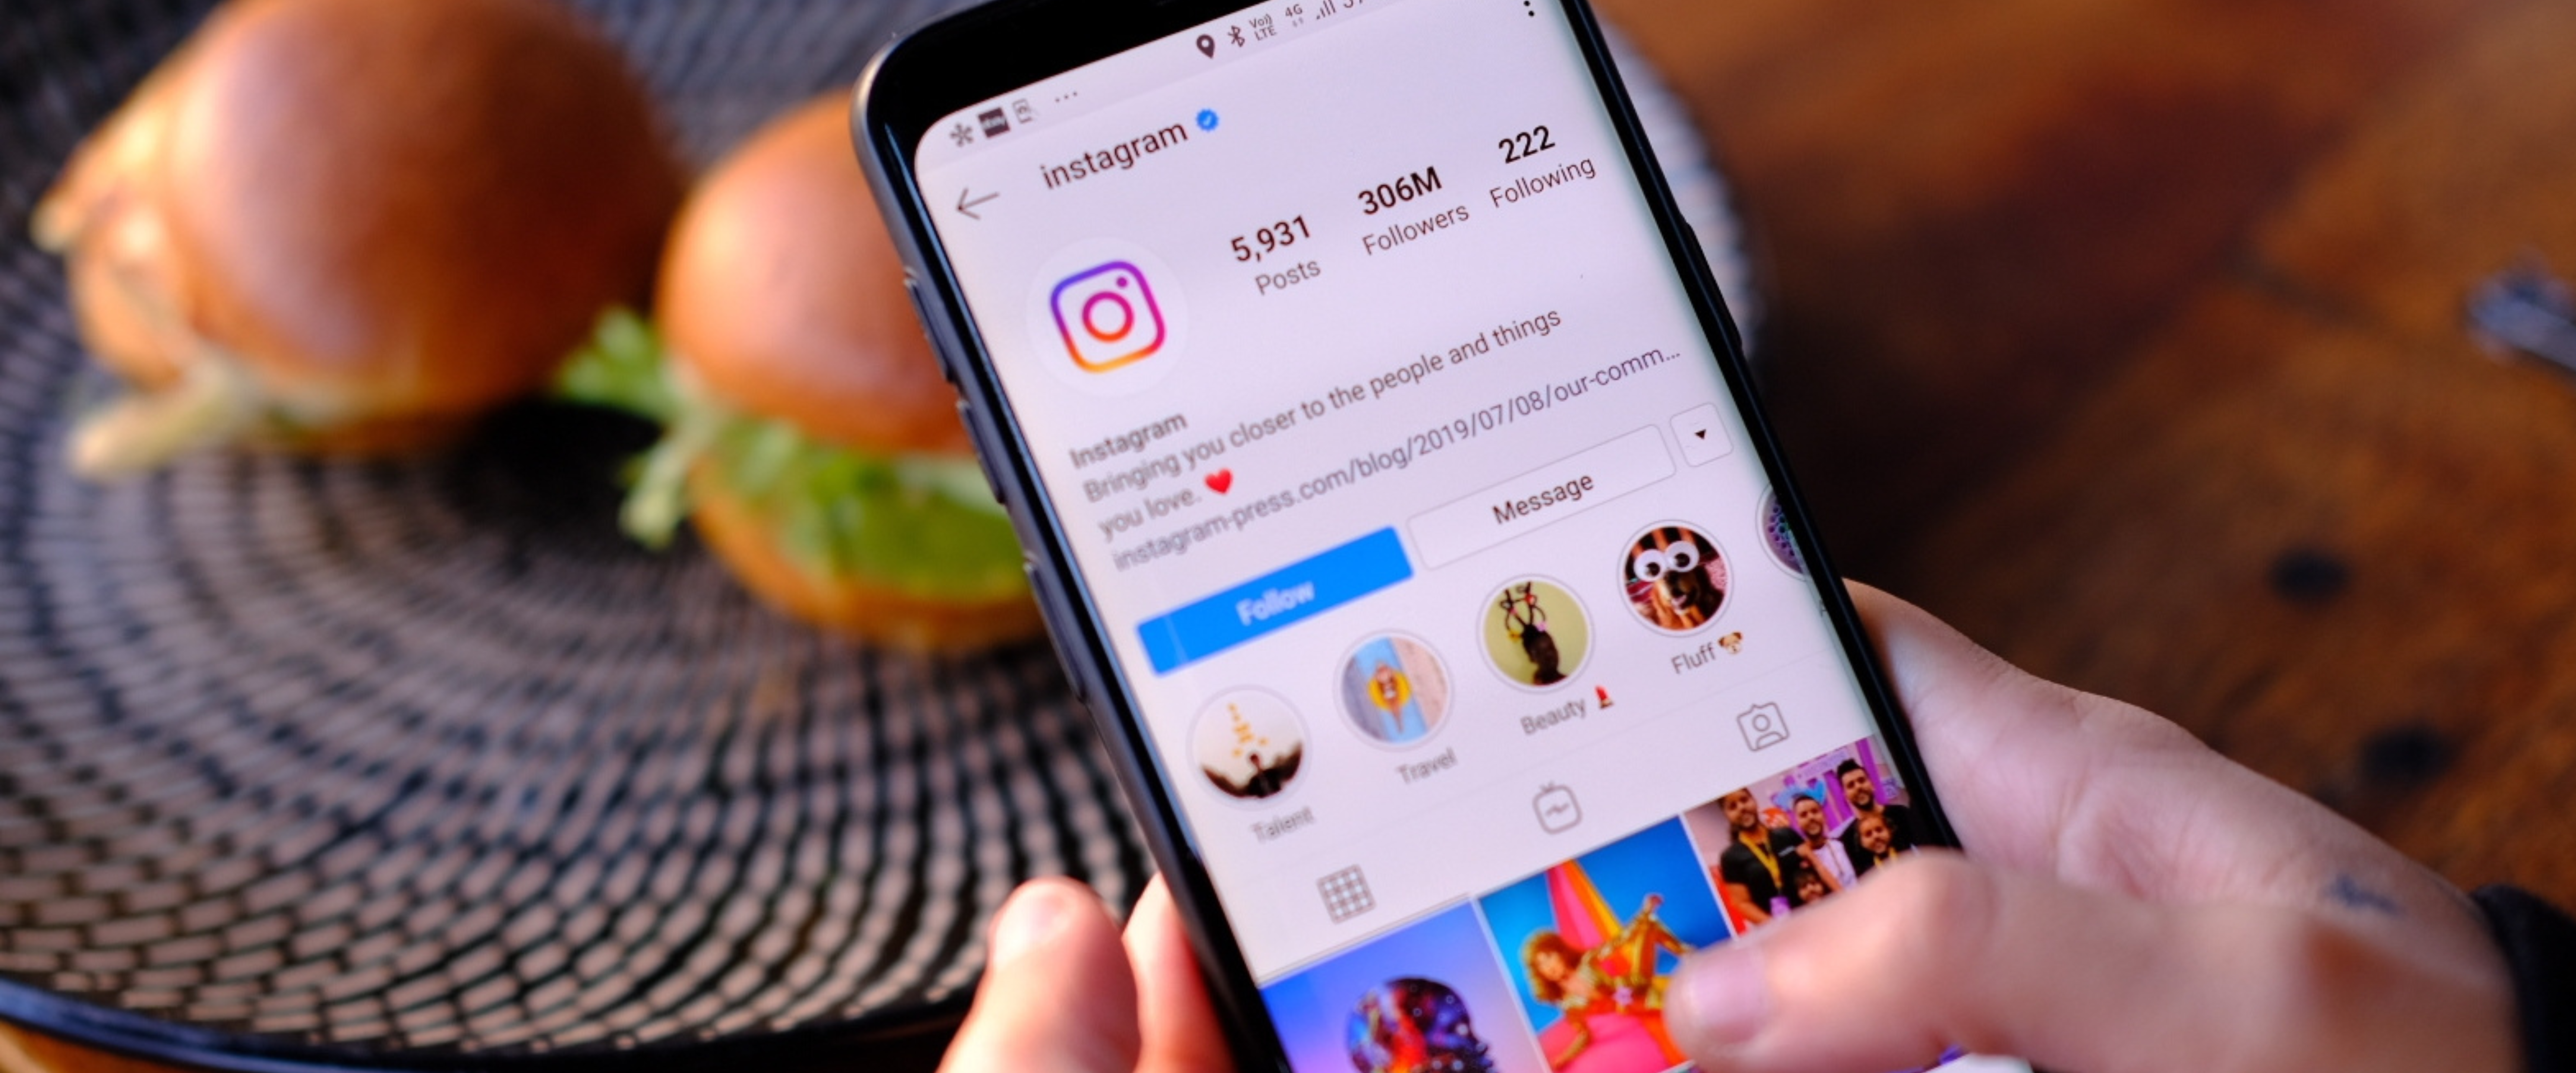 Bør du legge til #Instagram i mediemiksen din? - Fyr